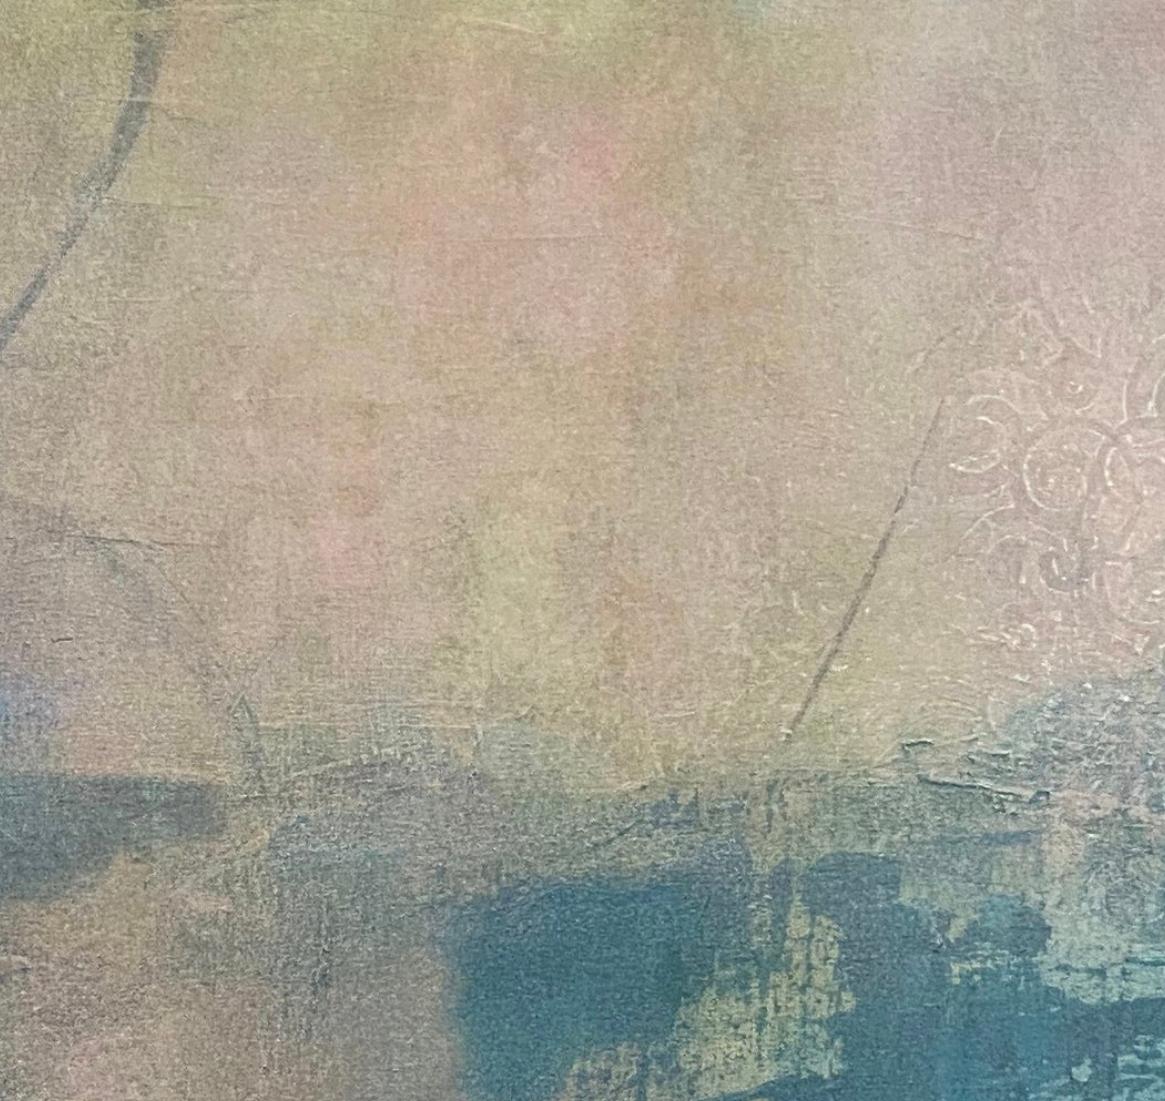 Le lever du soleil sur la baie, paysage marin contemporain, bleu, rose, réflexion, flair asiatique - Impressionnisme abstrait Painting par Juanita Bellavance 